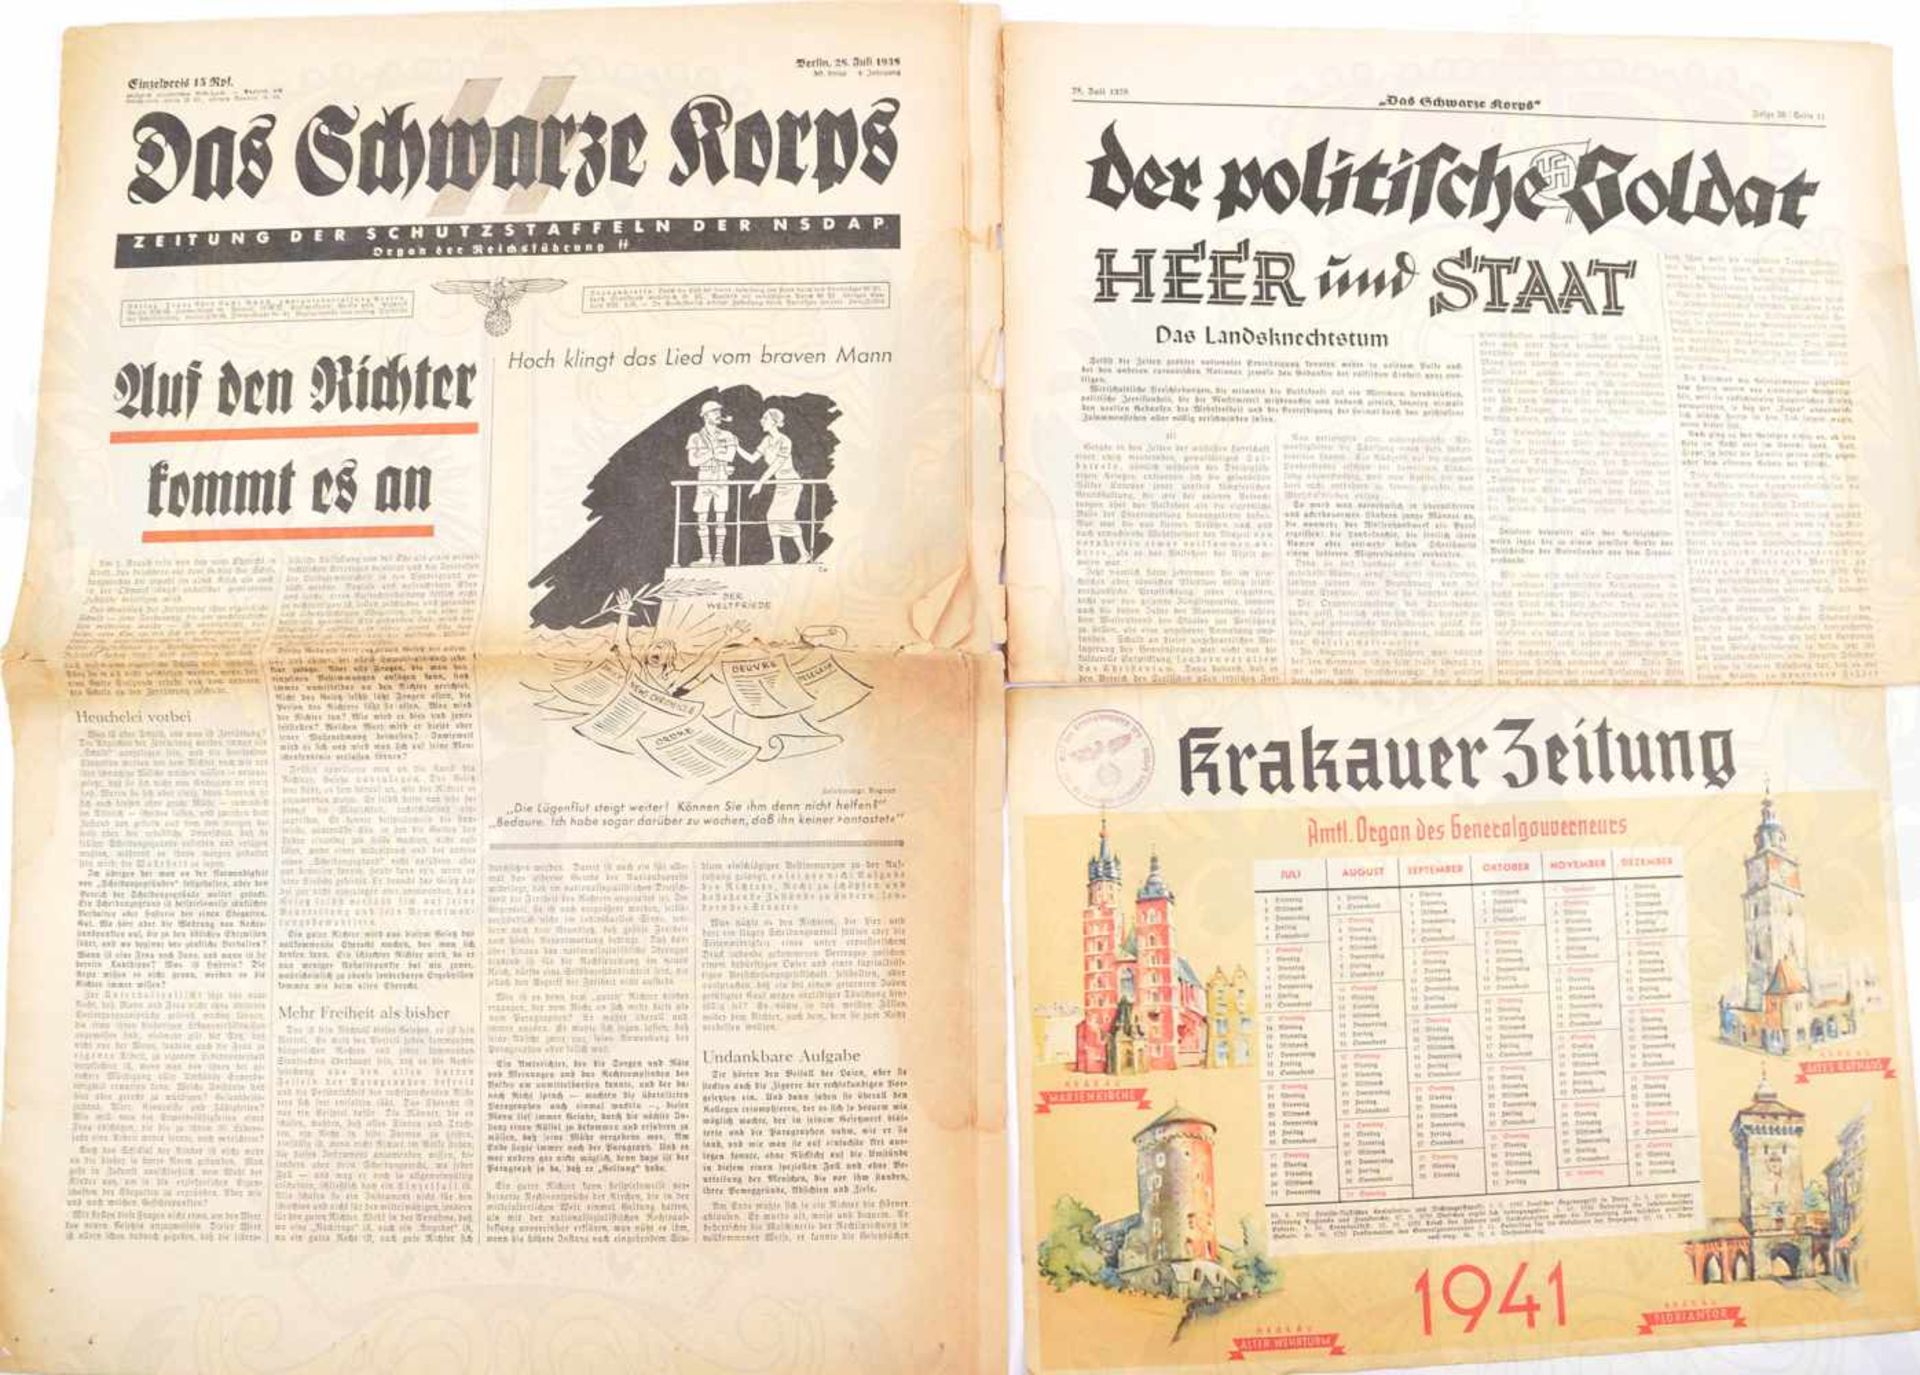 DAS SCHWARZE KORPS, Zeitung d. Schutzstaffeln d. NSDAP, 1938-Folge 30, Rand fleckig, tls.